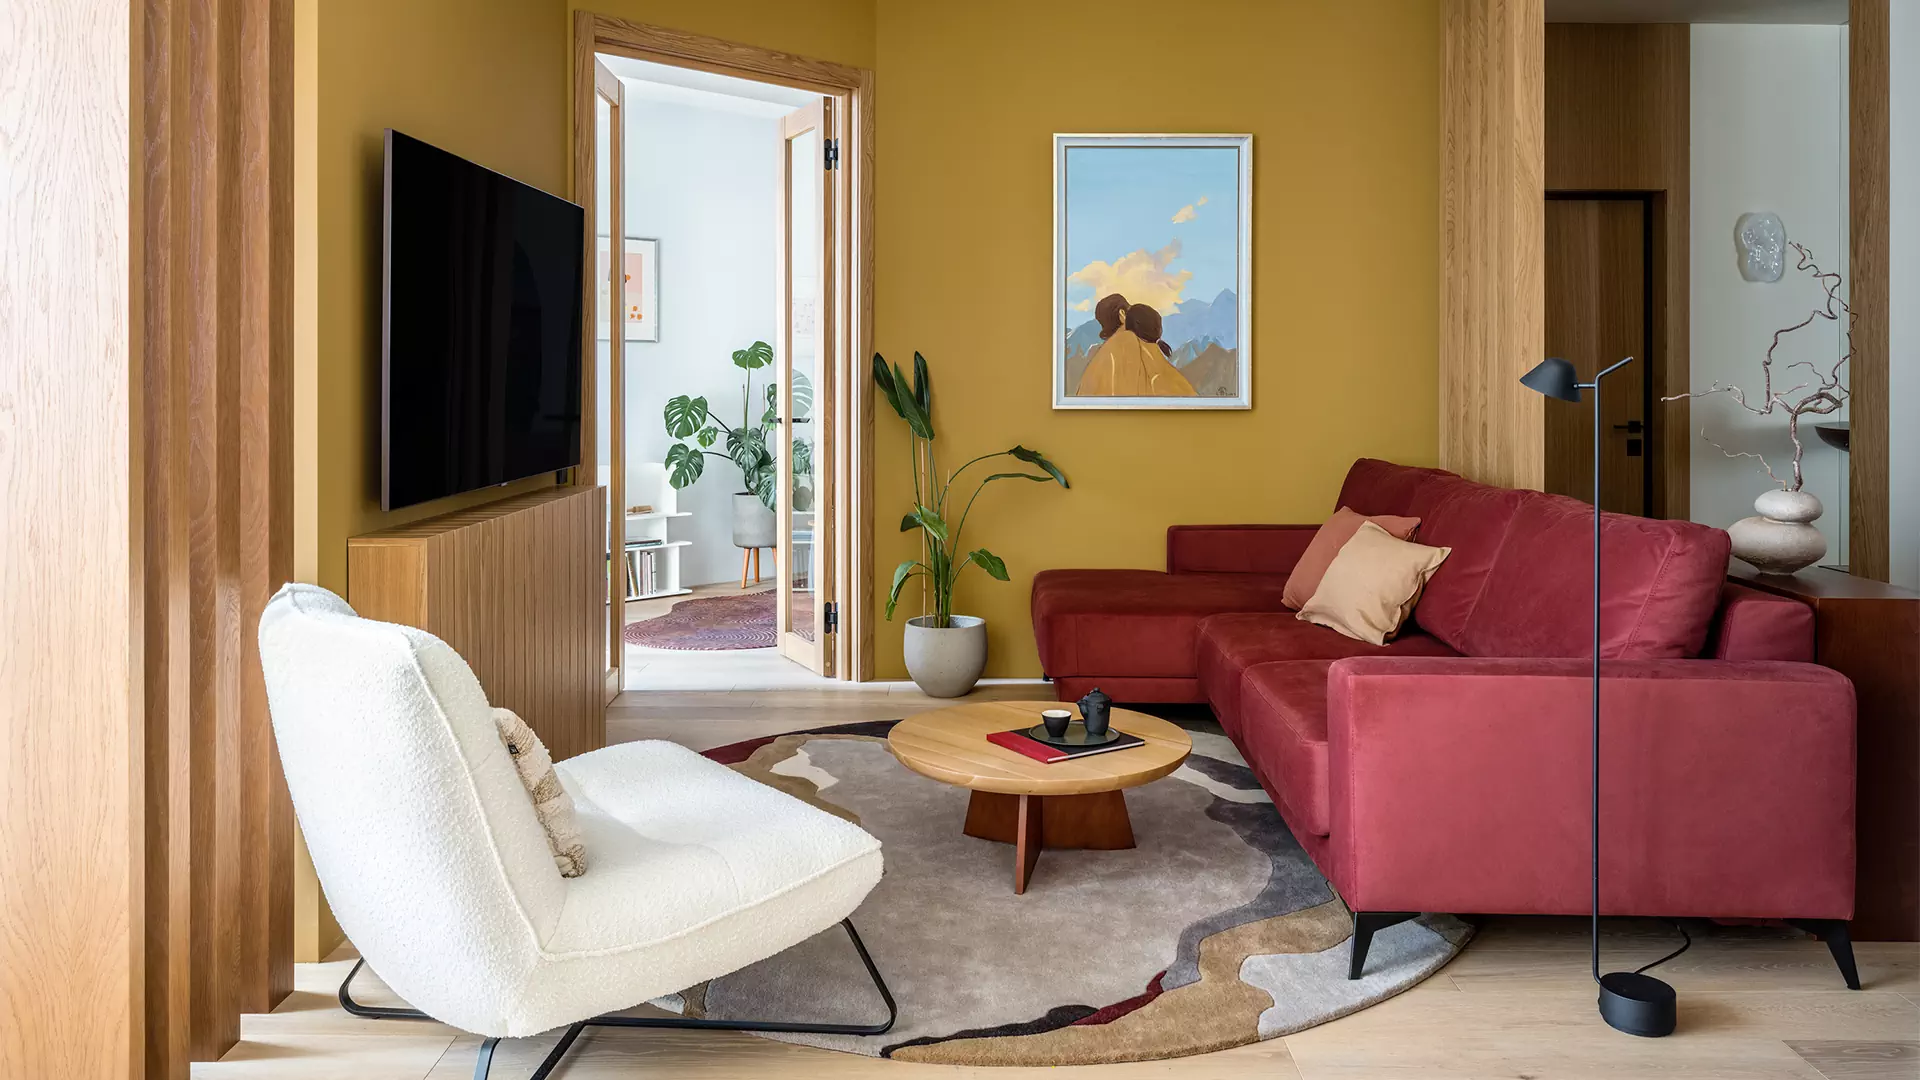 Необычные ковры и отсылки к алтайской природе в интерьере квартиры для яркой девушки — проект бюро AND design